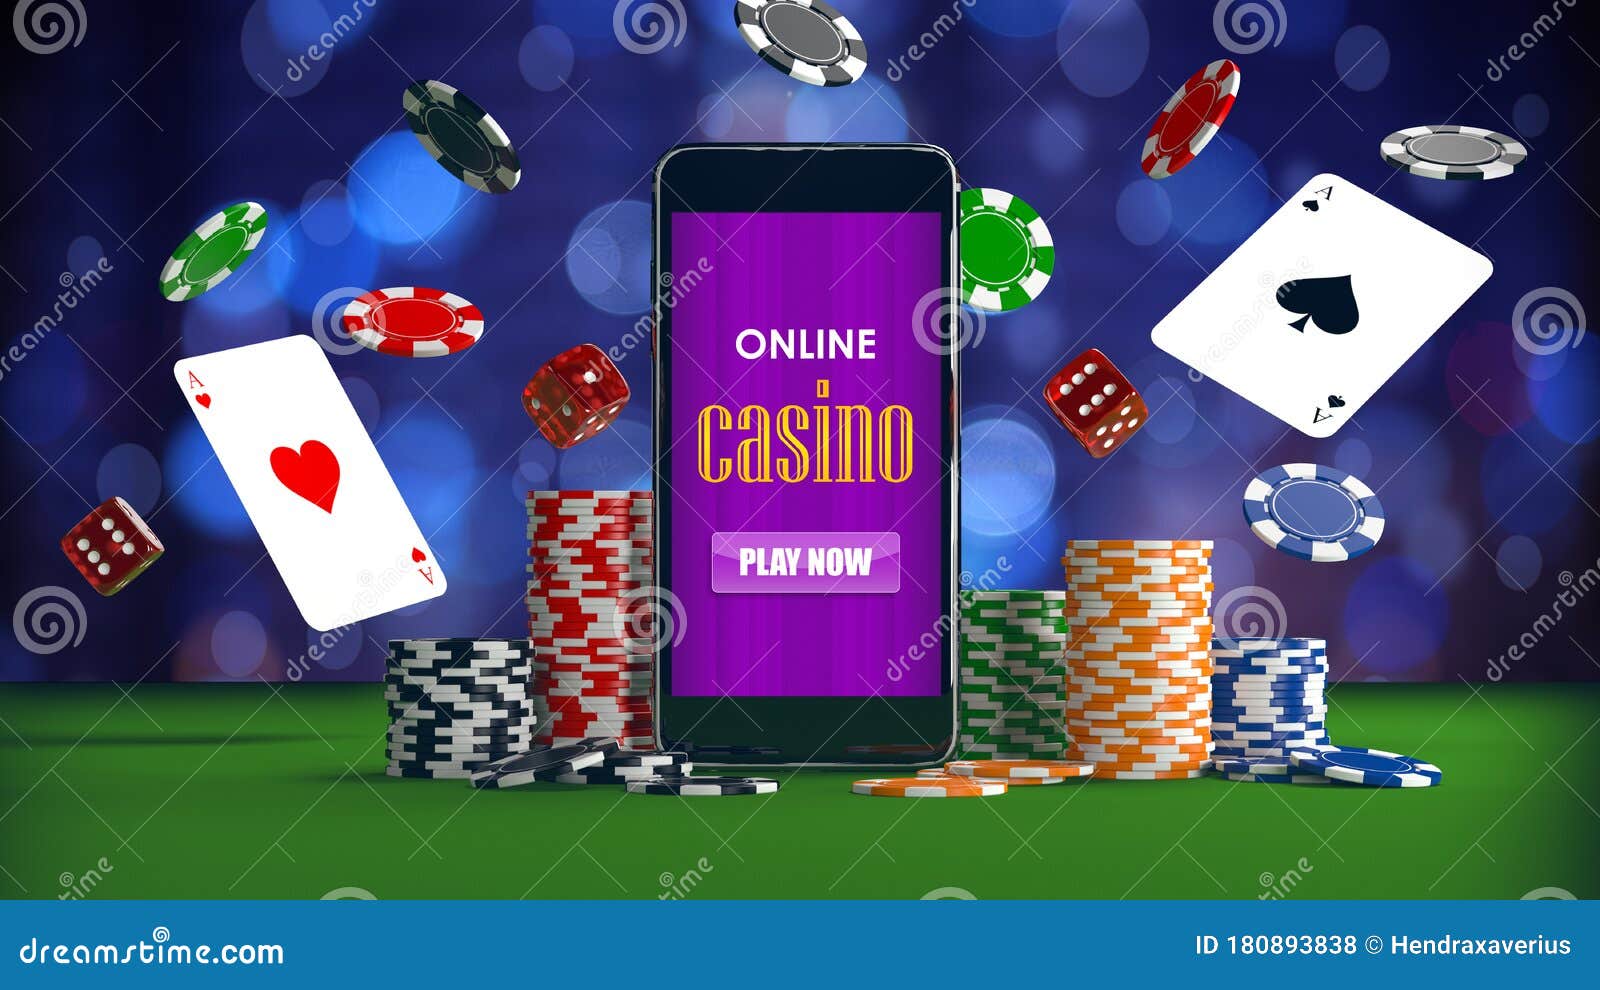 Blog em casino - Informações populares